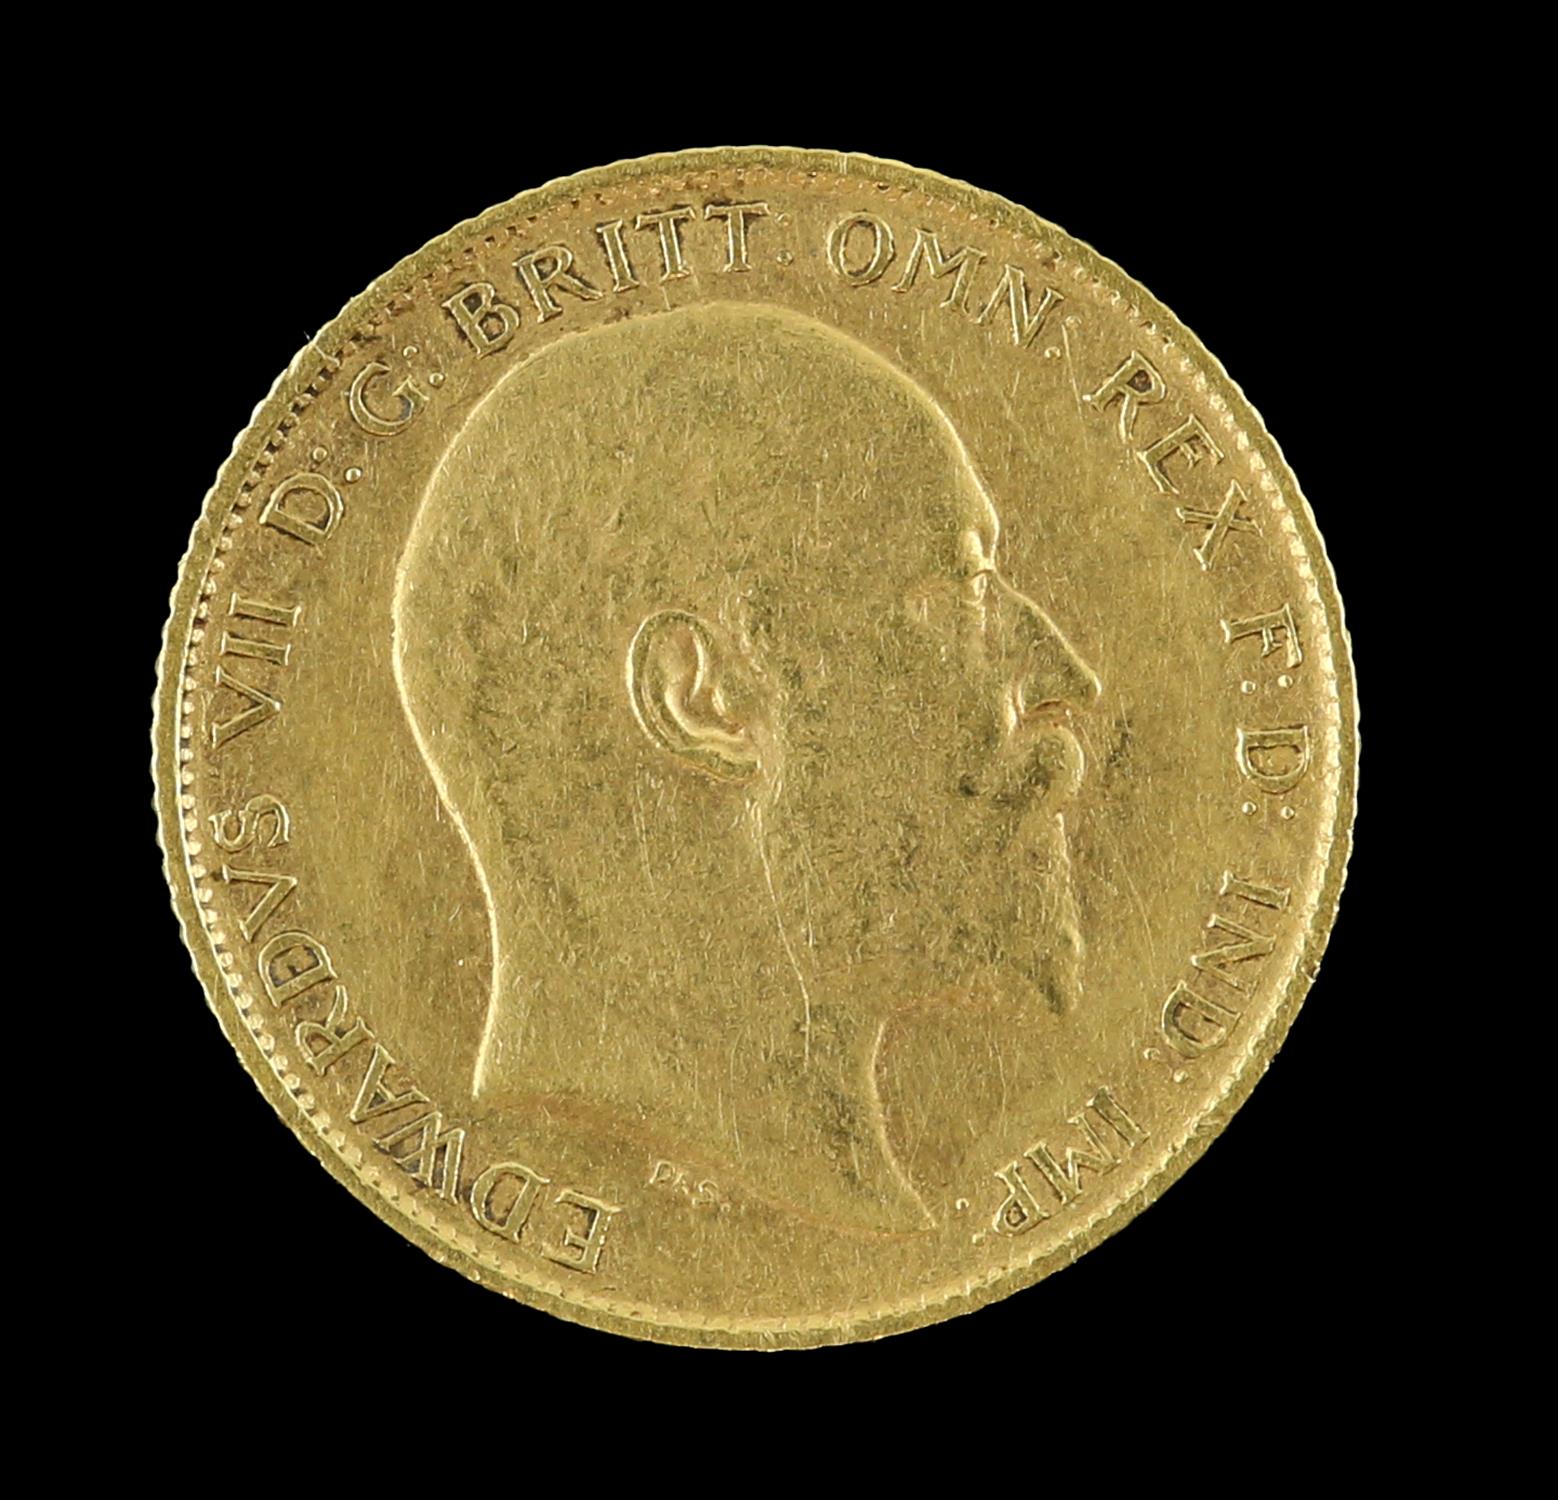 Edward VII gold half sovereign 1906 - Image 2 of 2